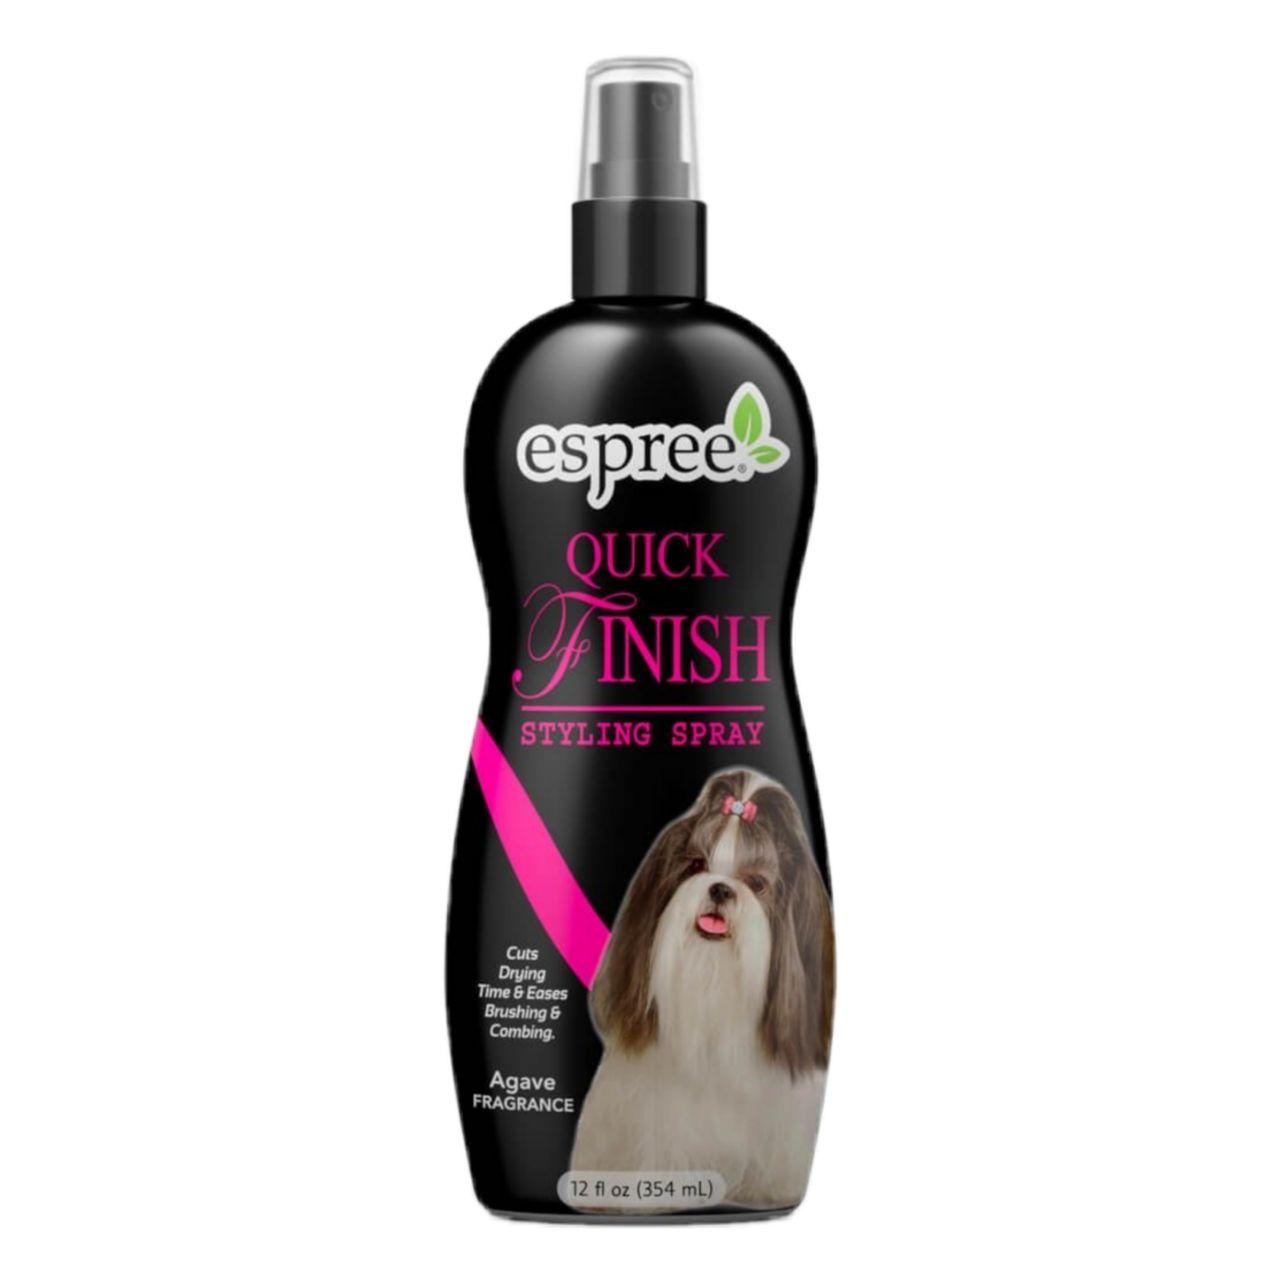 Espree Quick Finish Styling Spray – спрей для легкого розчісування й укладки шерсті собак